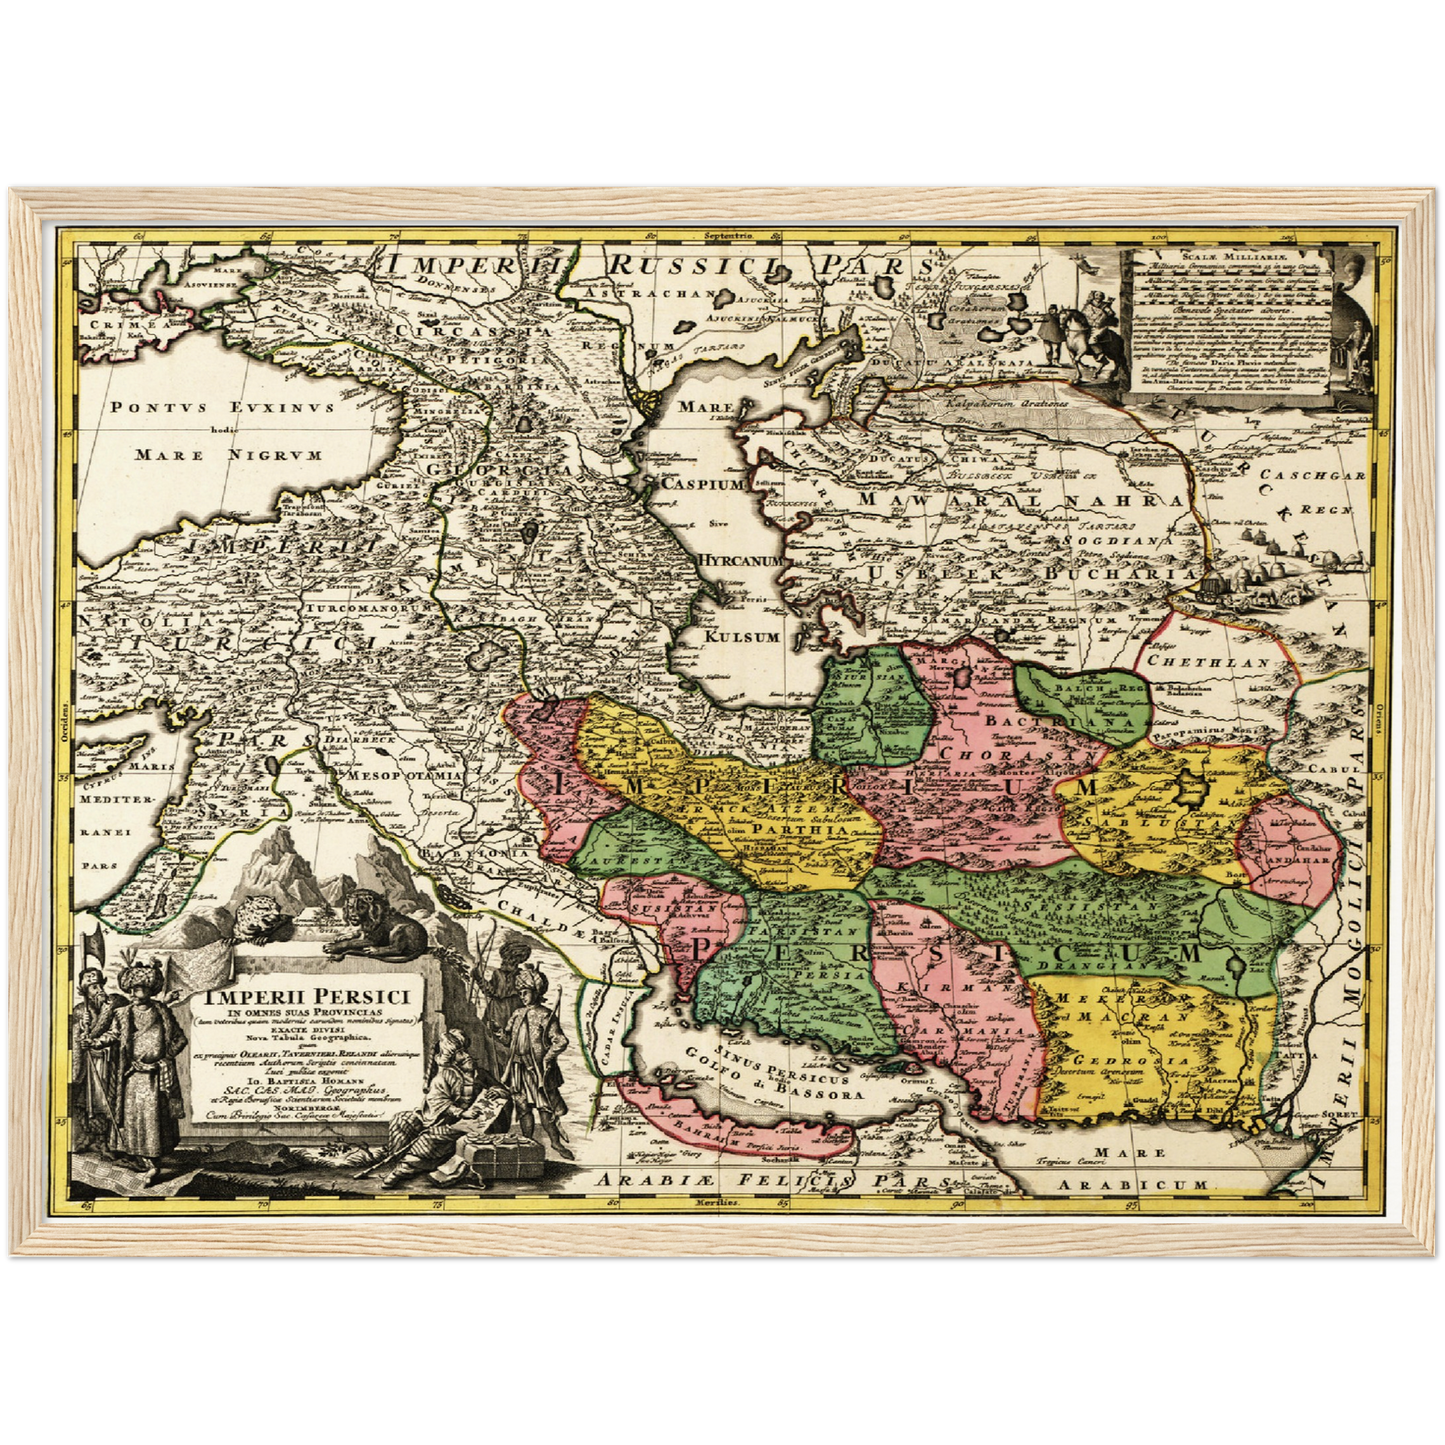 Historische Landkarte Persien um 1750